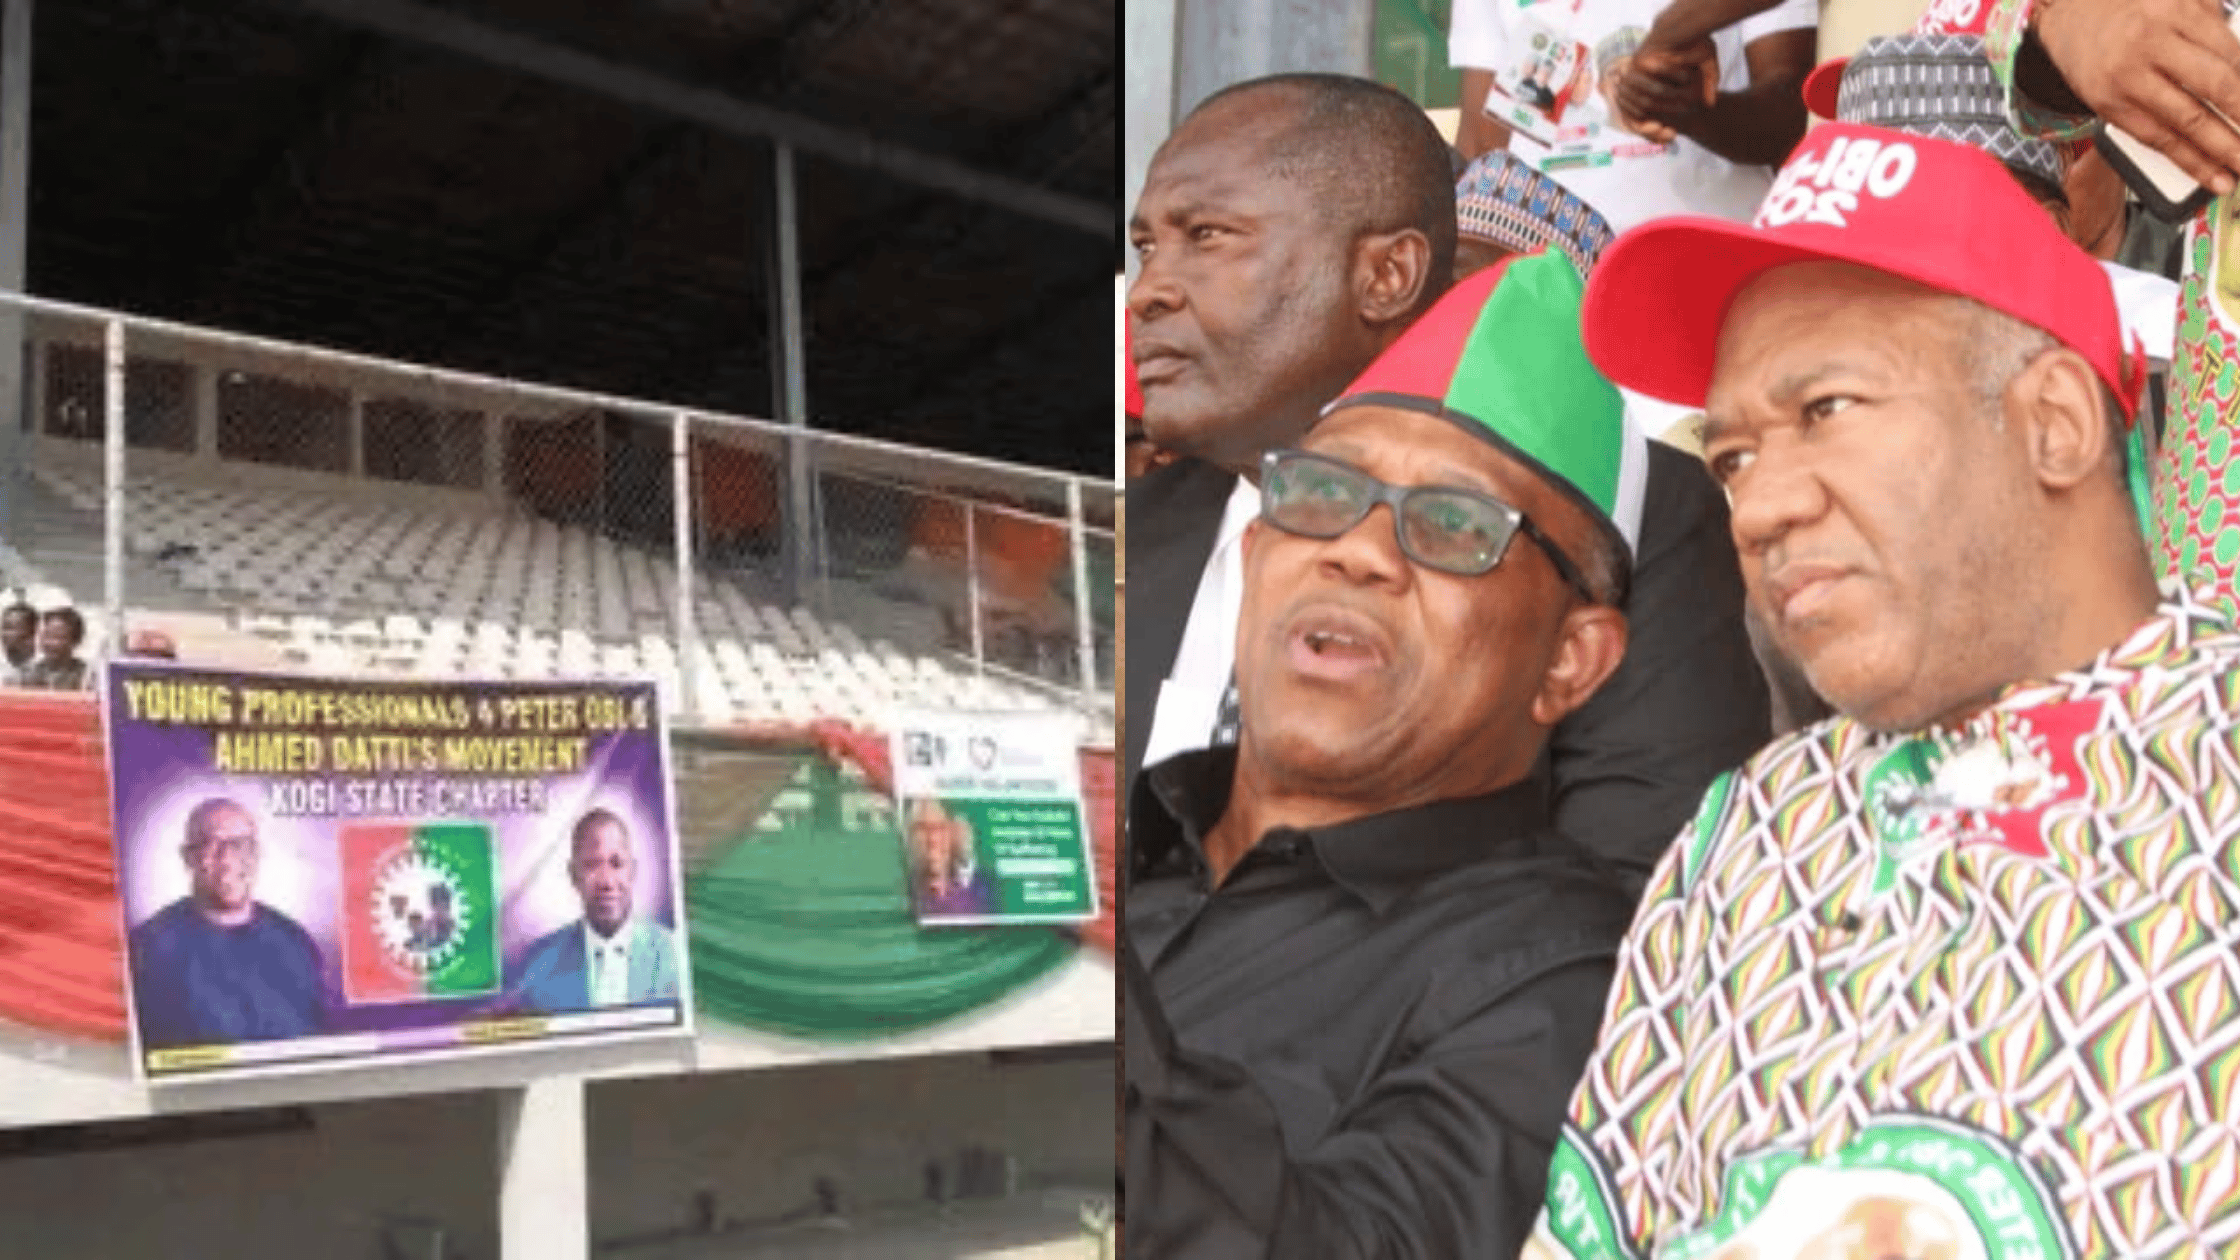 Kogi: Empty Seats Spotted As Peter Obi Takes Rally To APC Domain - [Photos]